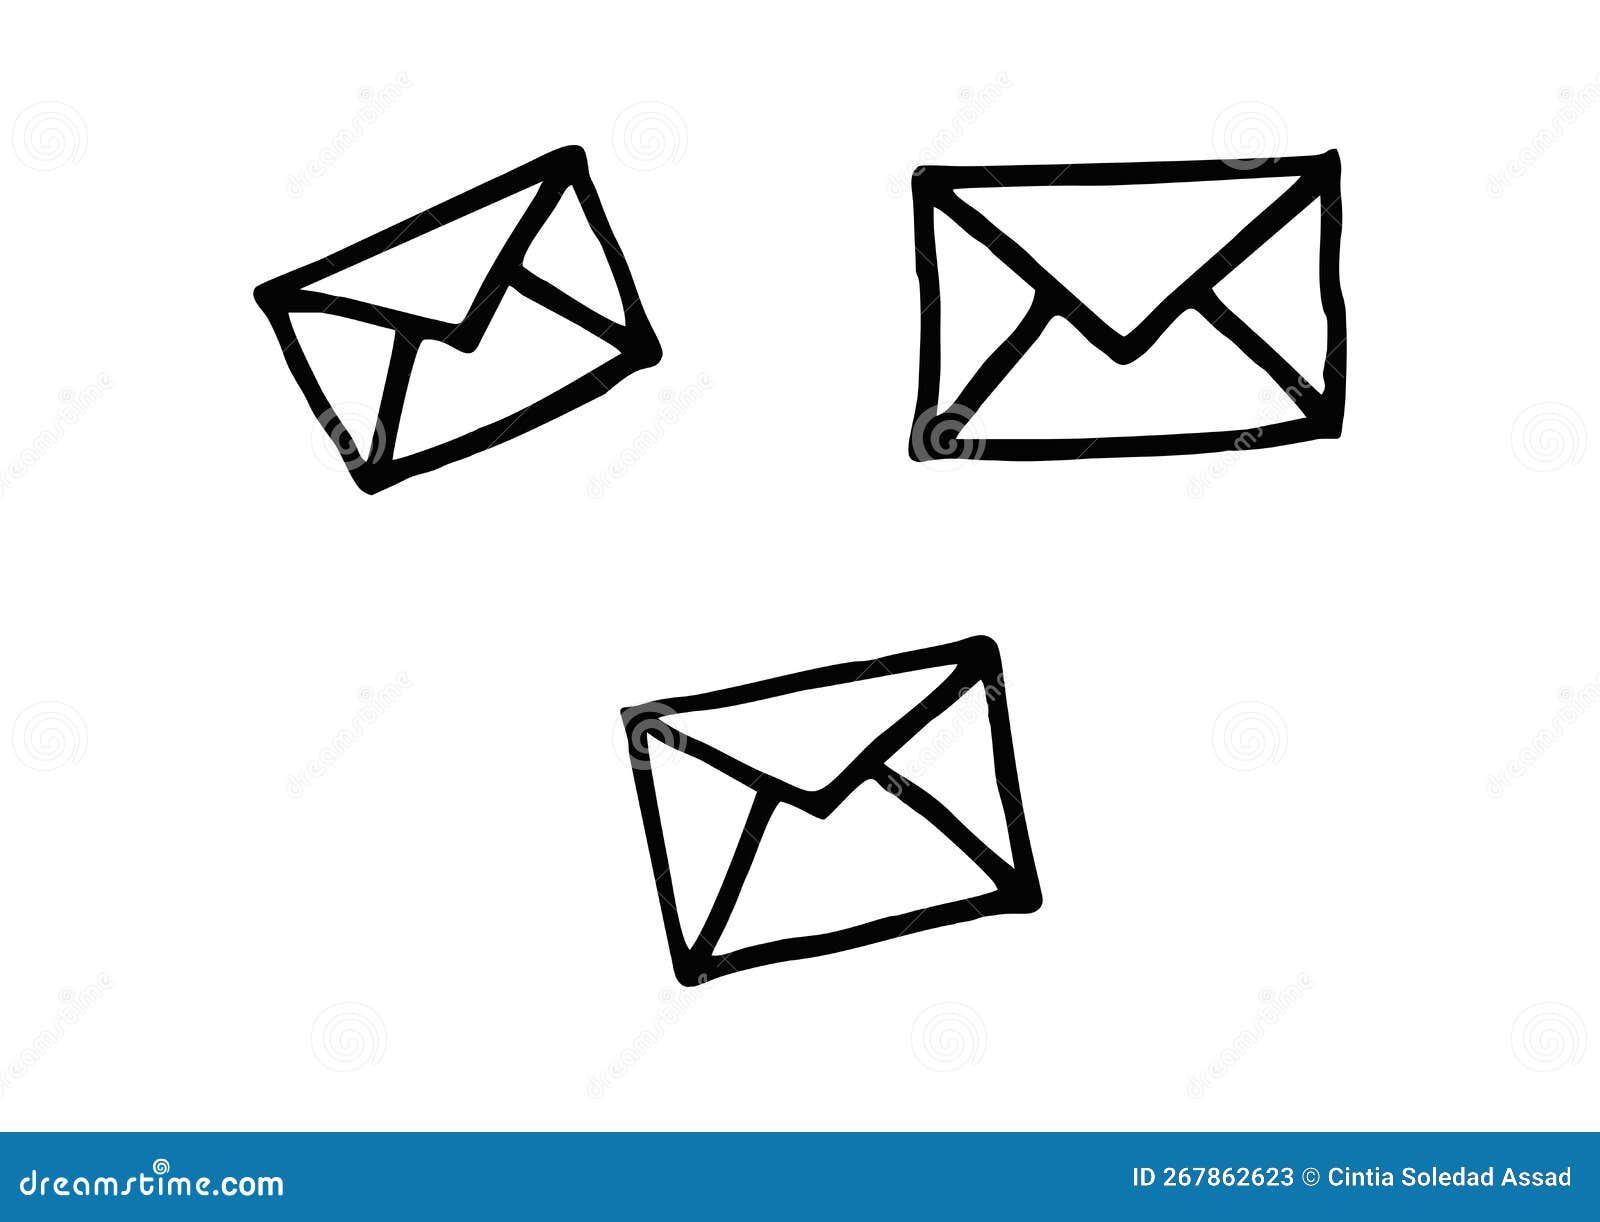 Letter Envelope PNG Transparent, Letter Pink Grass Envelope Drawing,  Letter, Grass, Envelope PNG Image For Free Download